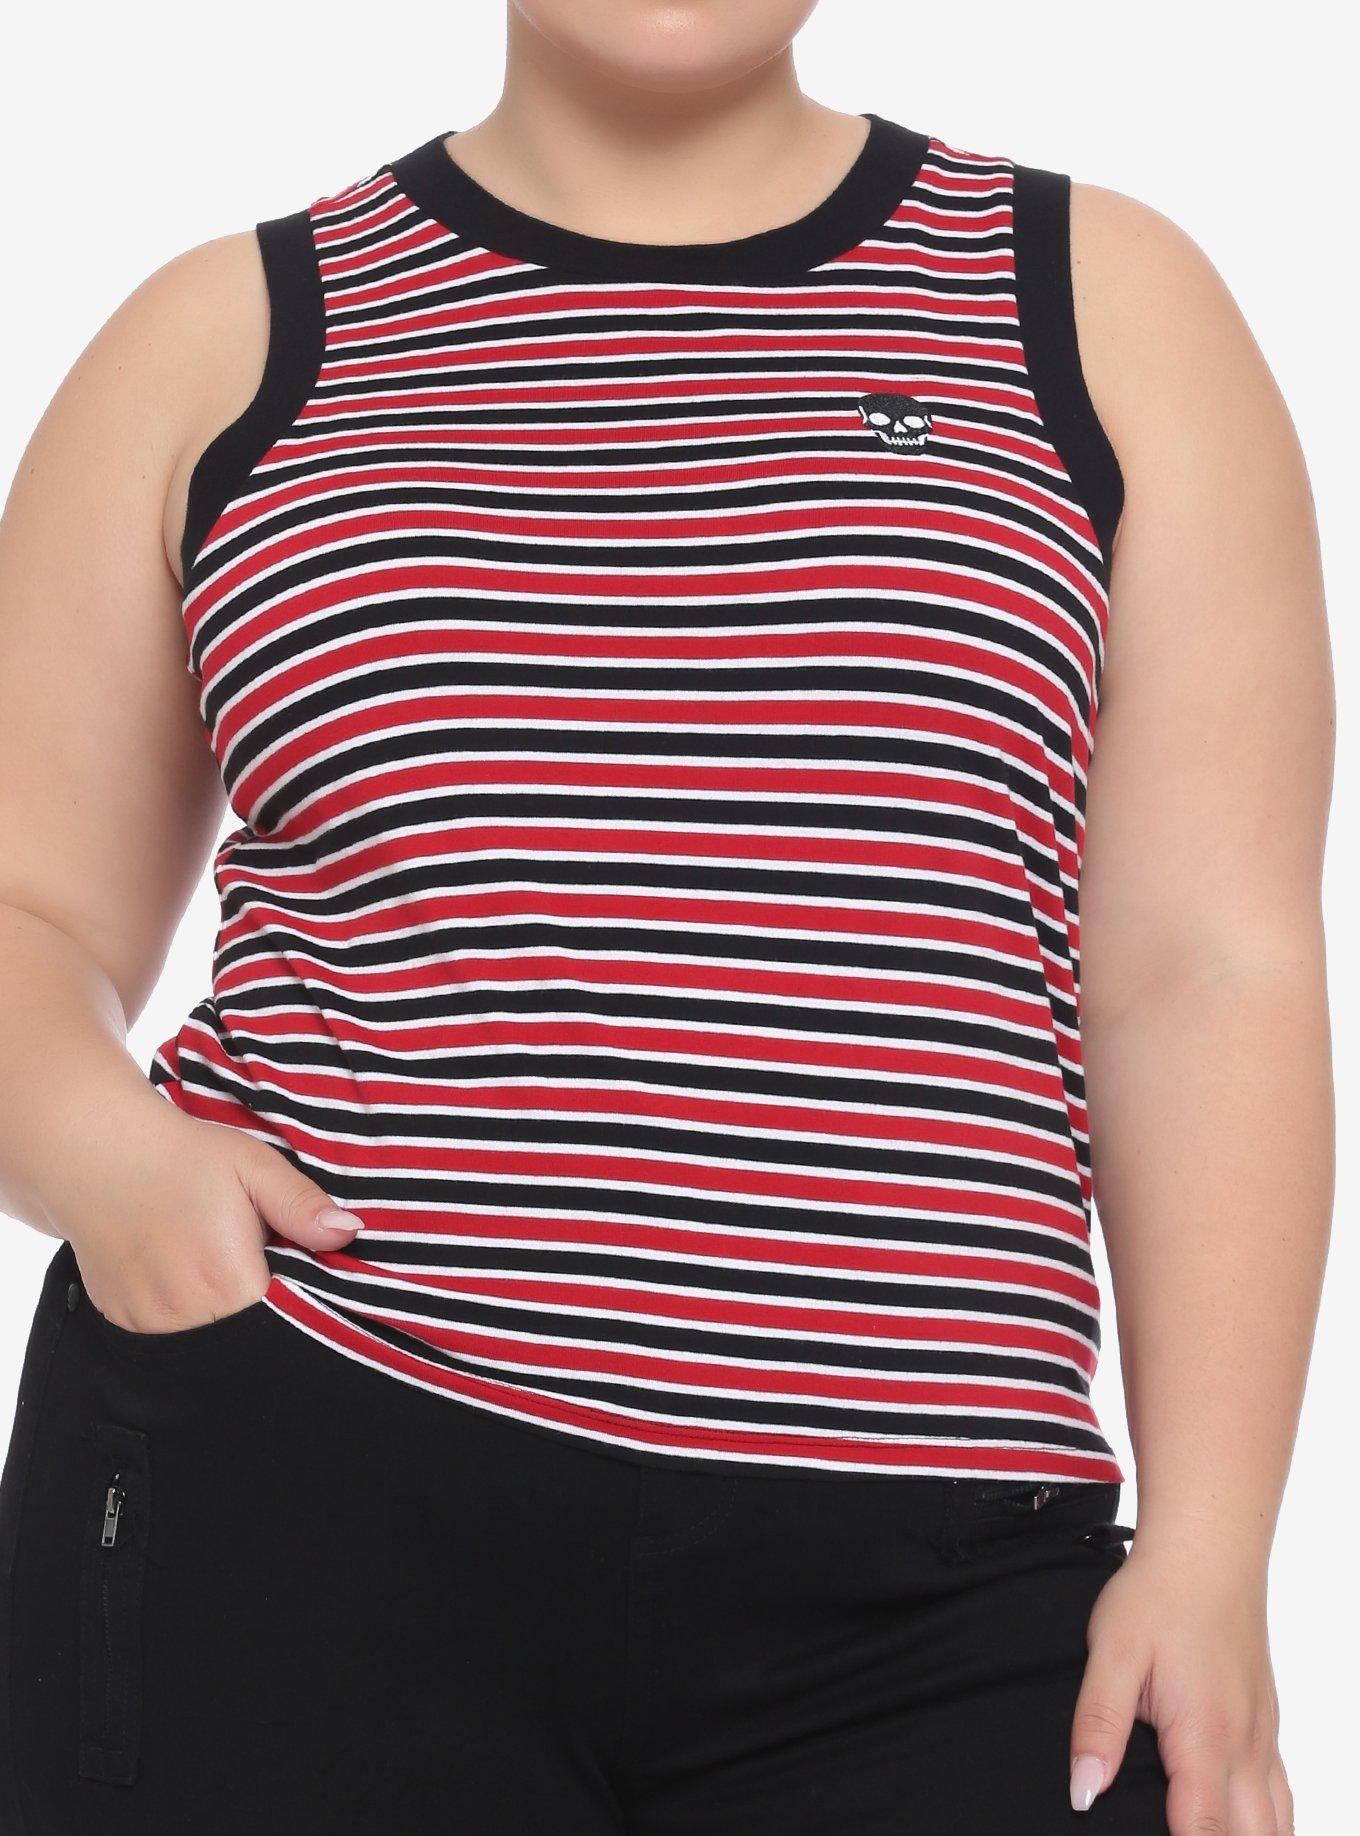 Skull Black & Red Stripe Girls Crop Tank Top Plus Size, MULTI, hi-res